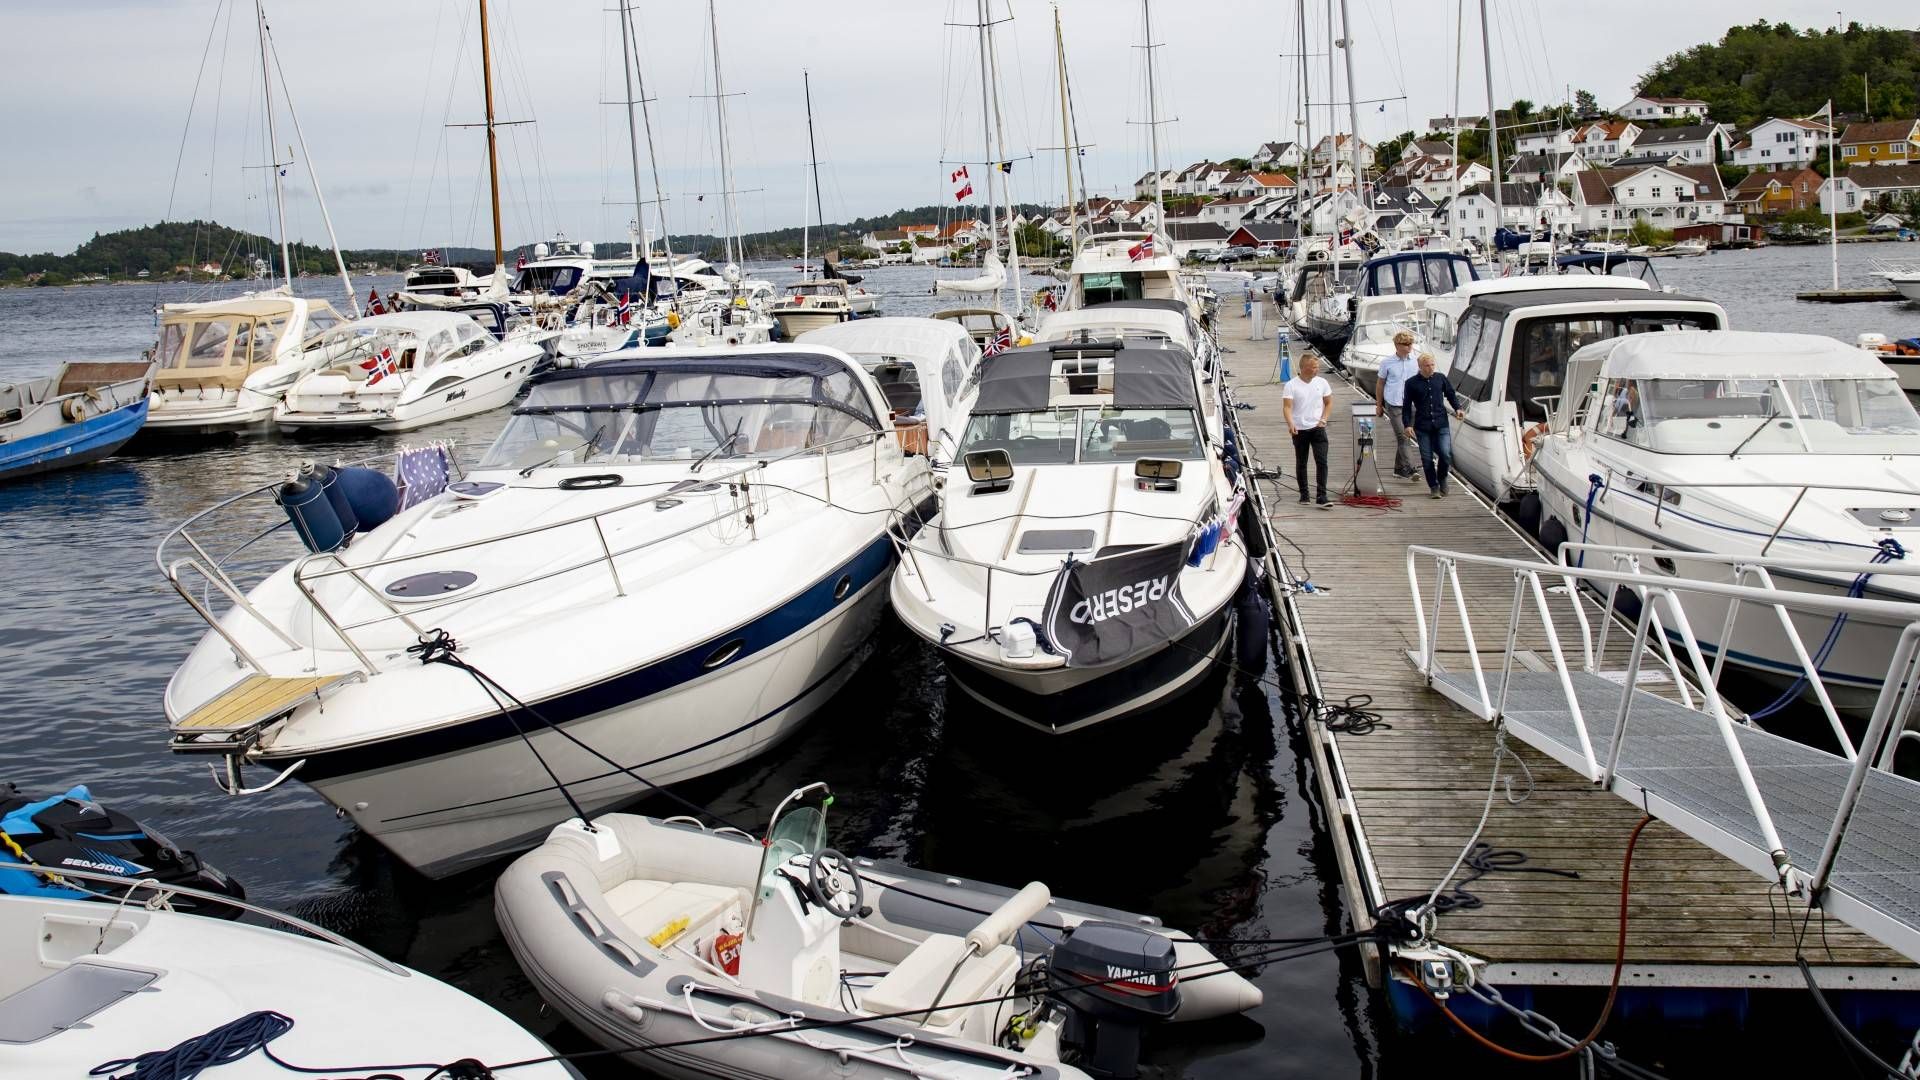 Det var tett mellom båtene i Kragerø tidligere i sommer. | Foto: Geir Olsen / NTB scanpix